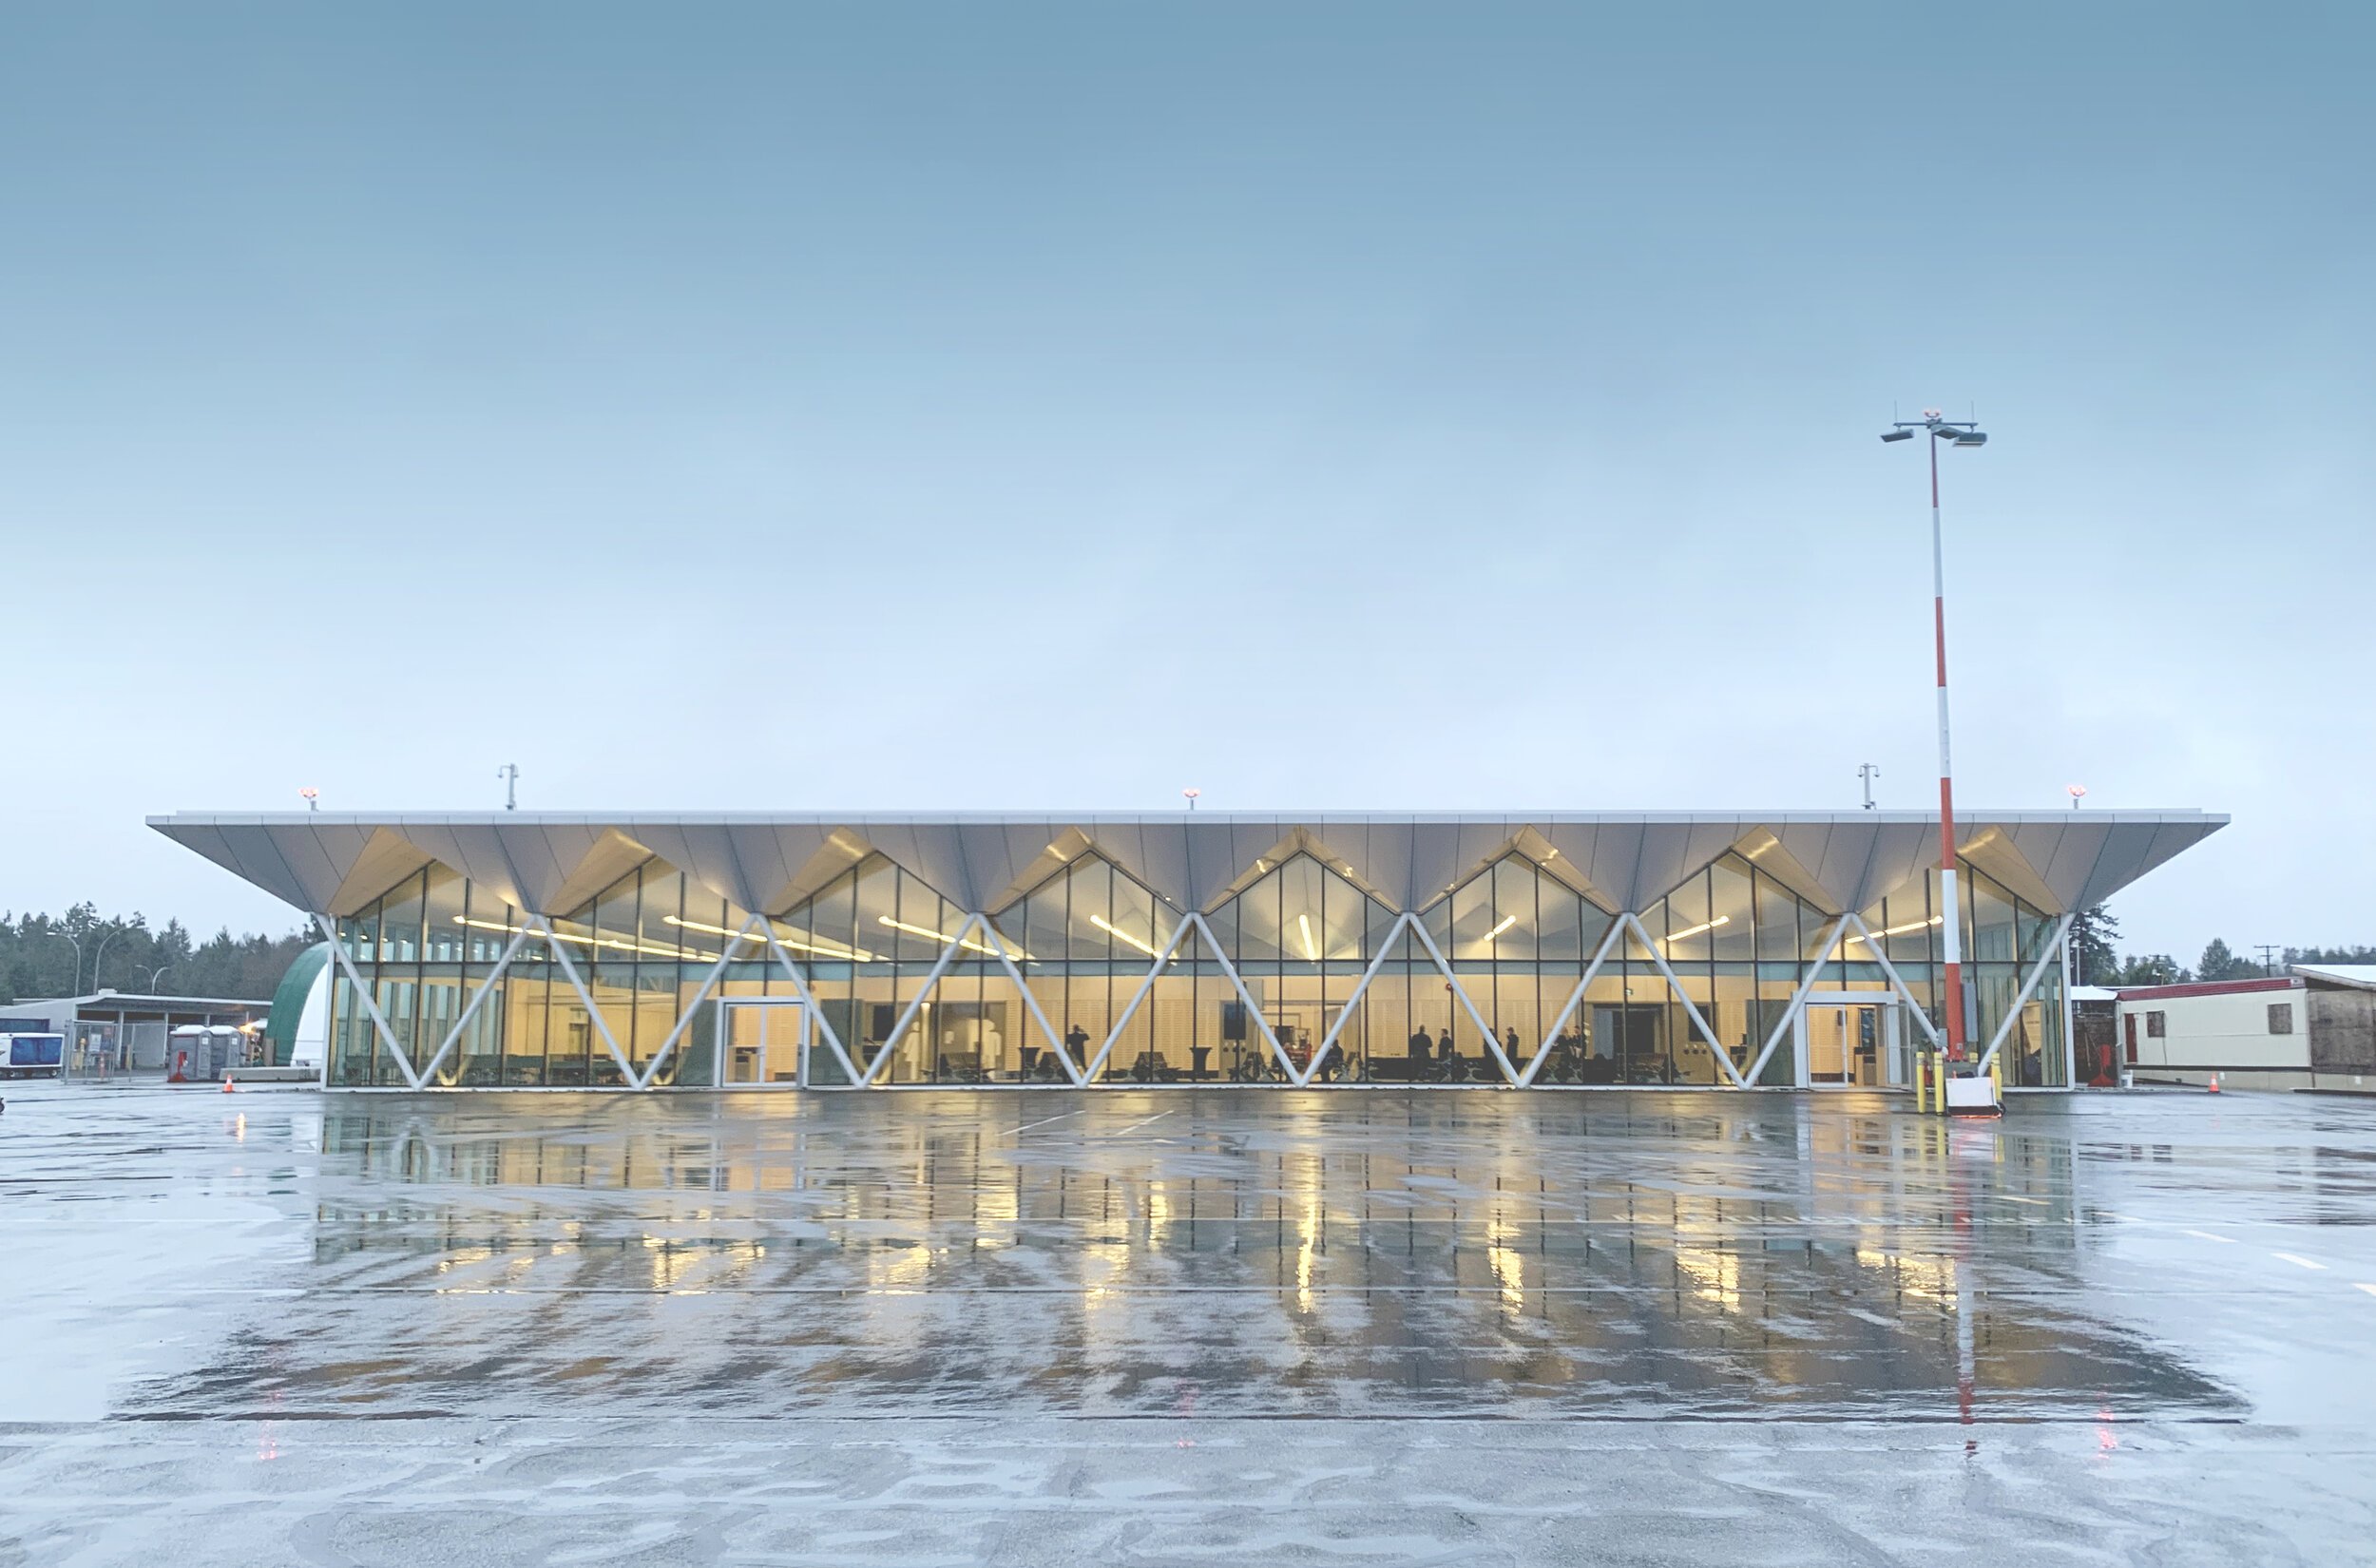 Nanaimo Airport Expansion Phase 1